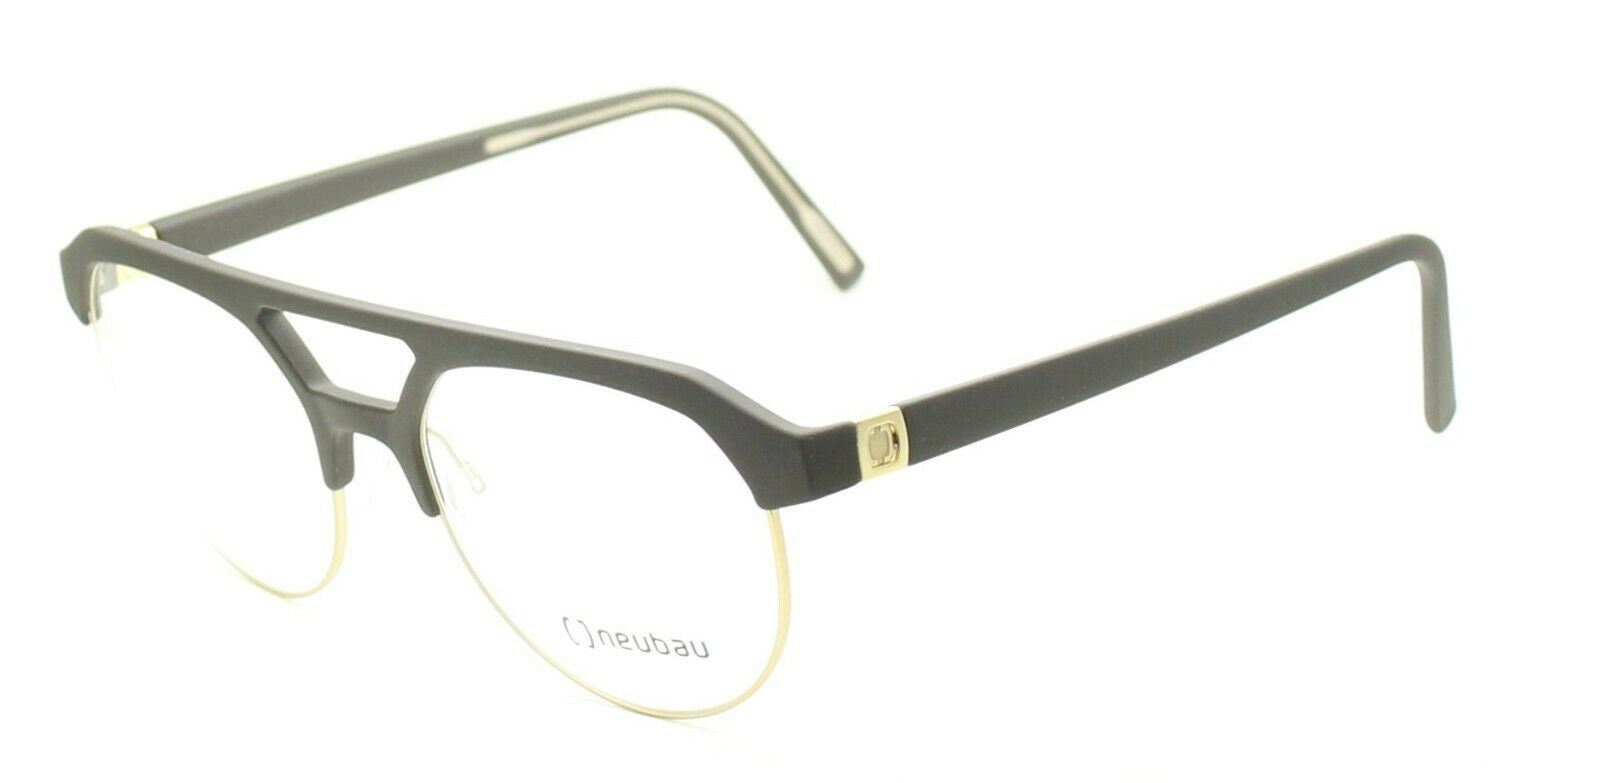 NEUBAU Giovanni T073 6030 54mm Eyewear FRAMES RX Optical Eyeglasses New Austria